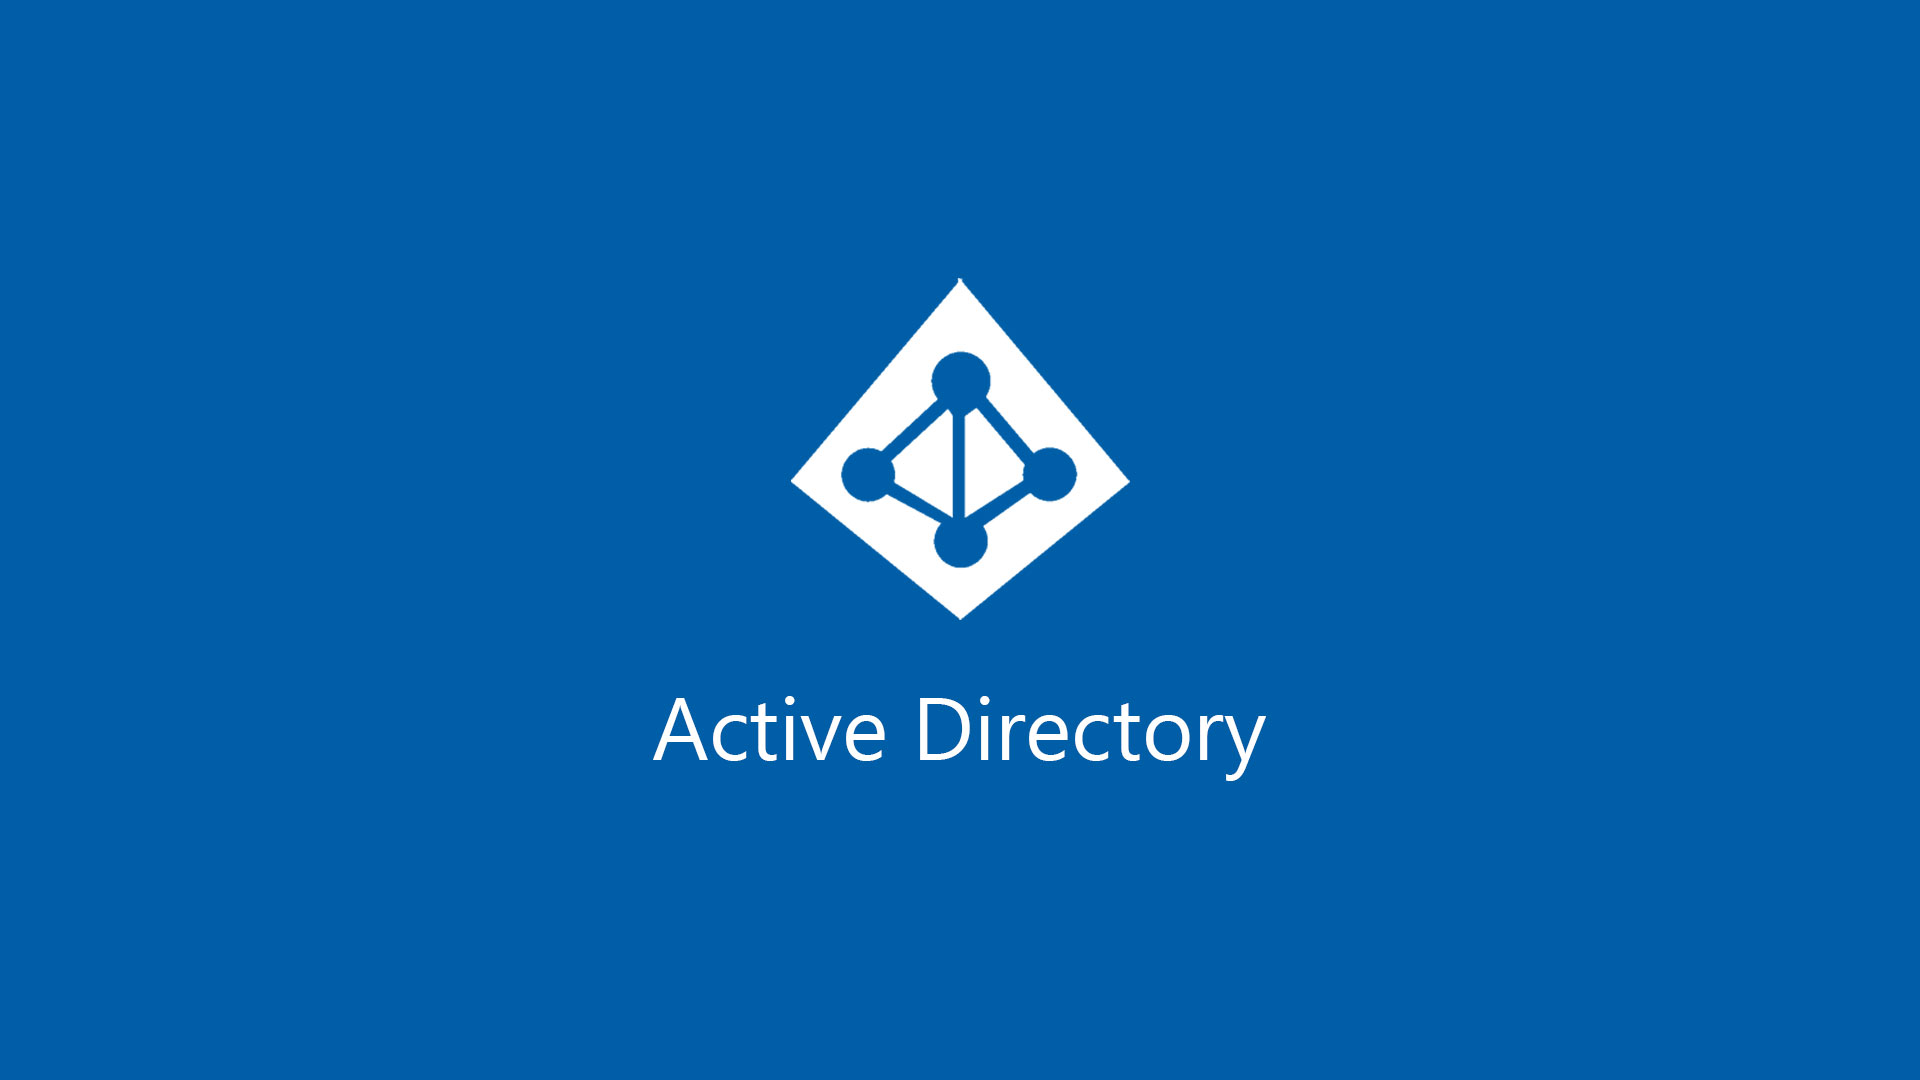 Pentester votre domaine Active Directory avec crackmapexec. (via SMB)